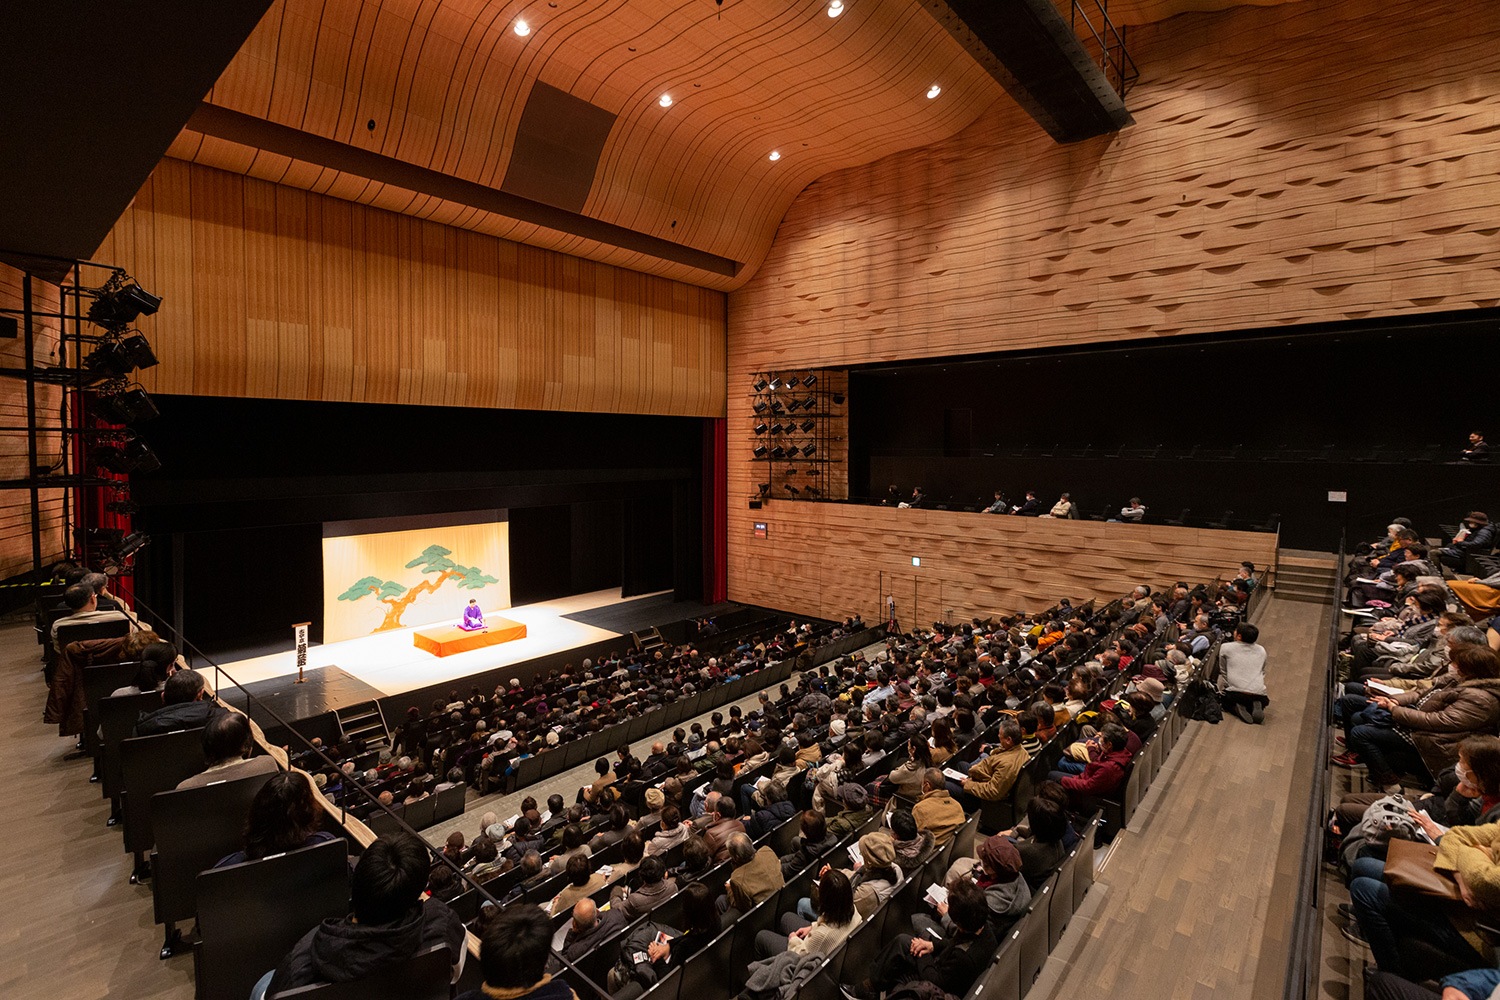 釜石市民ホールTETTO ホールAは客席数838。この日は450人が「笑う日本の伝統芸」を堪能。このホールで狂言が上演されたのは、今回が初めて。